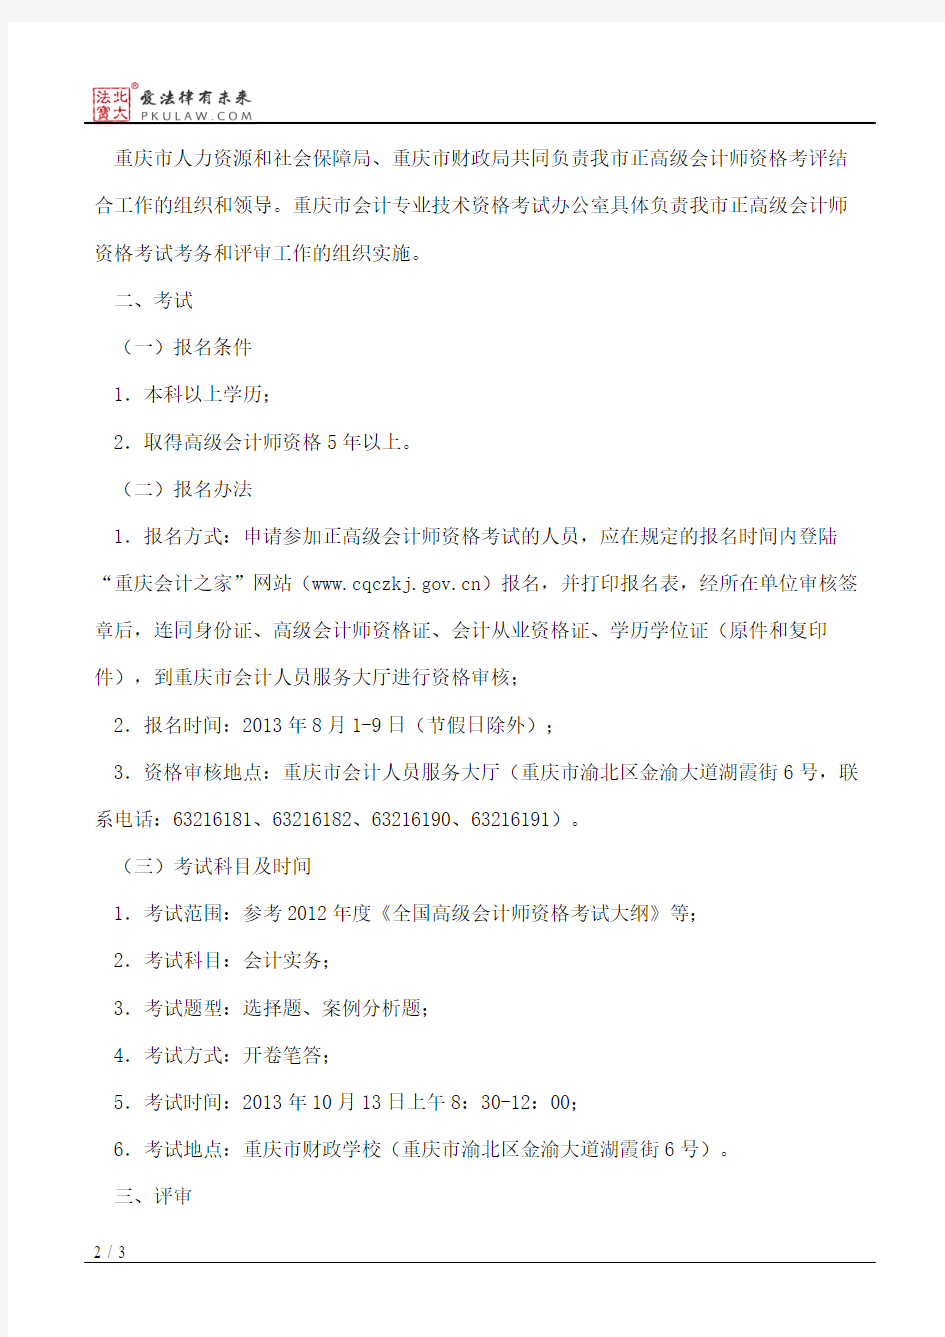 重庆市人力资源和社会保障局、重庆市财政局关于开展2013年度重庆